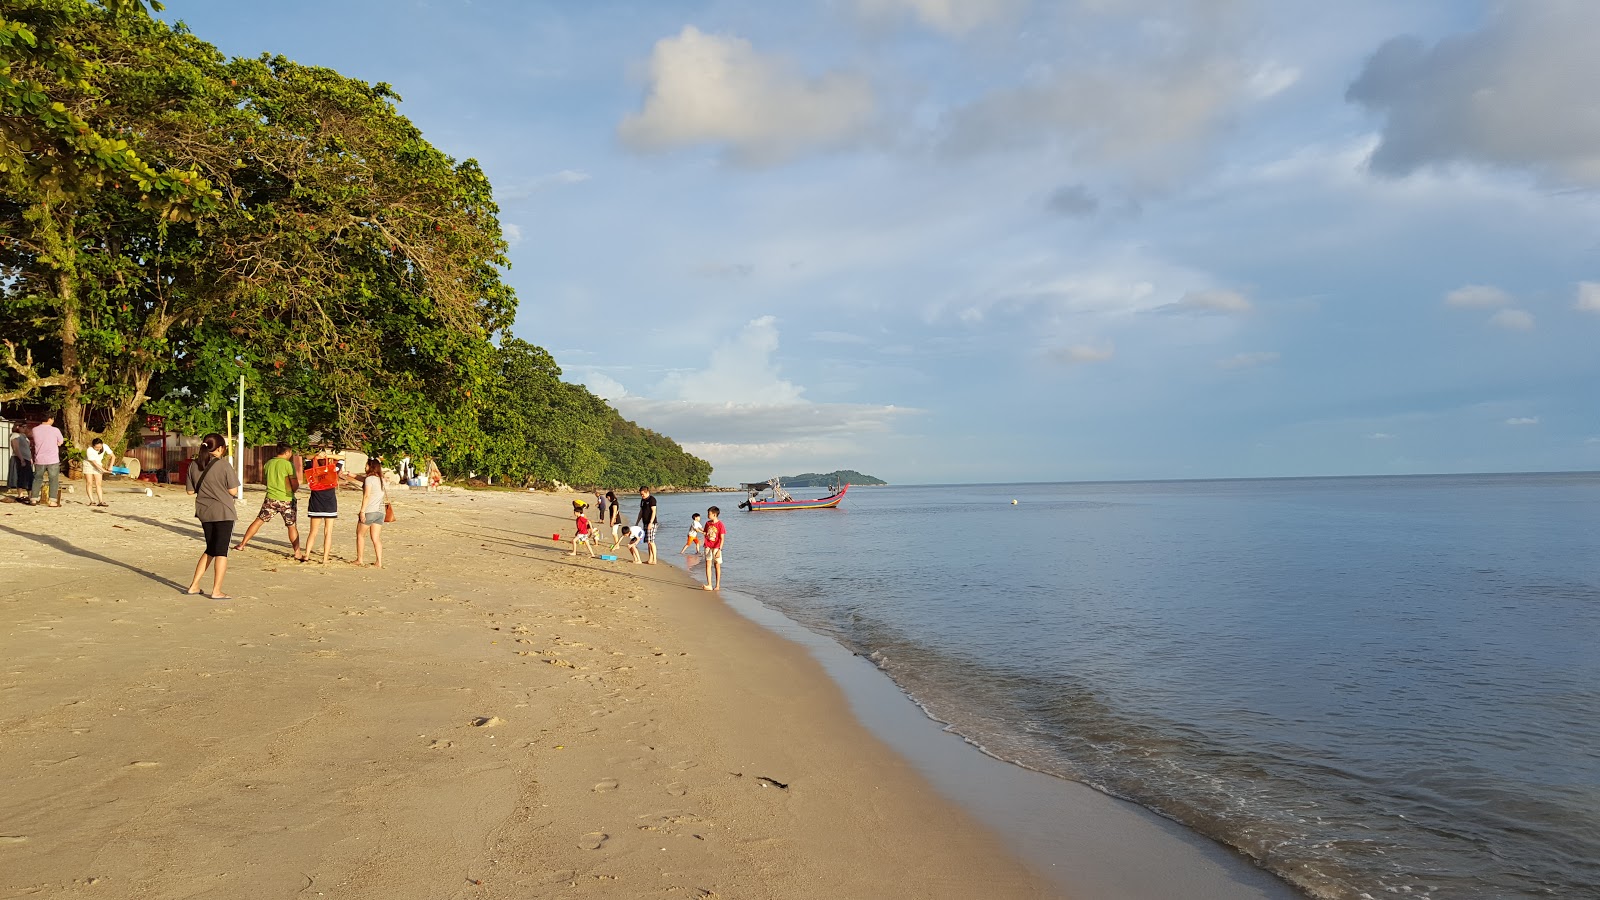 Foto de Ombak Damai Beach - lugar popular entre os apreciadores de relaxamento